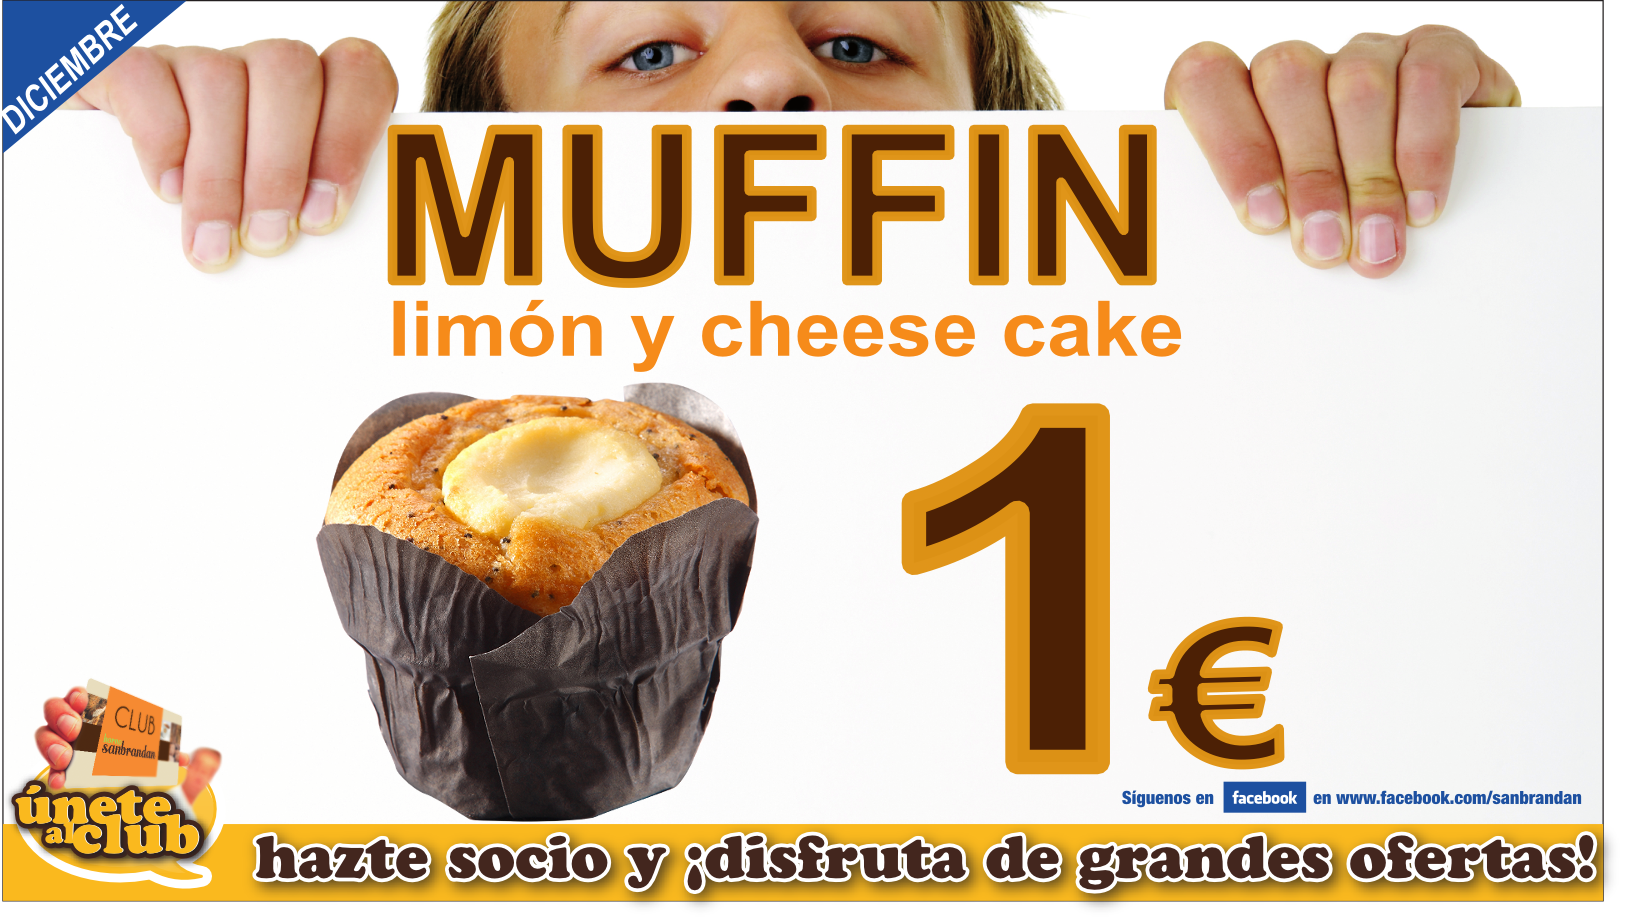 Muffin  limón y cheese cake por 1 €